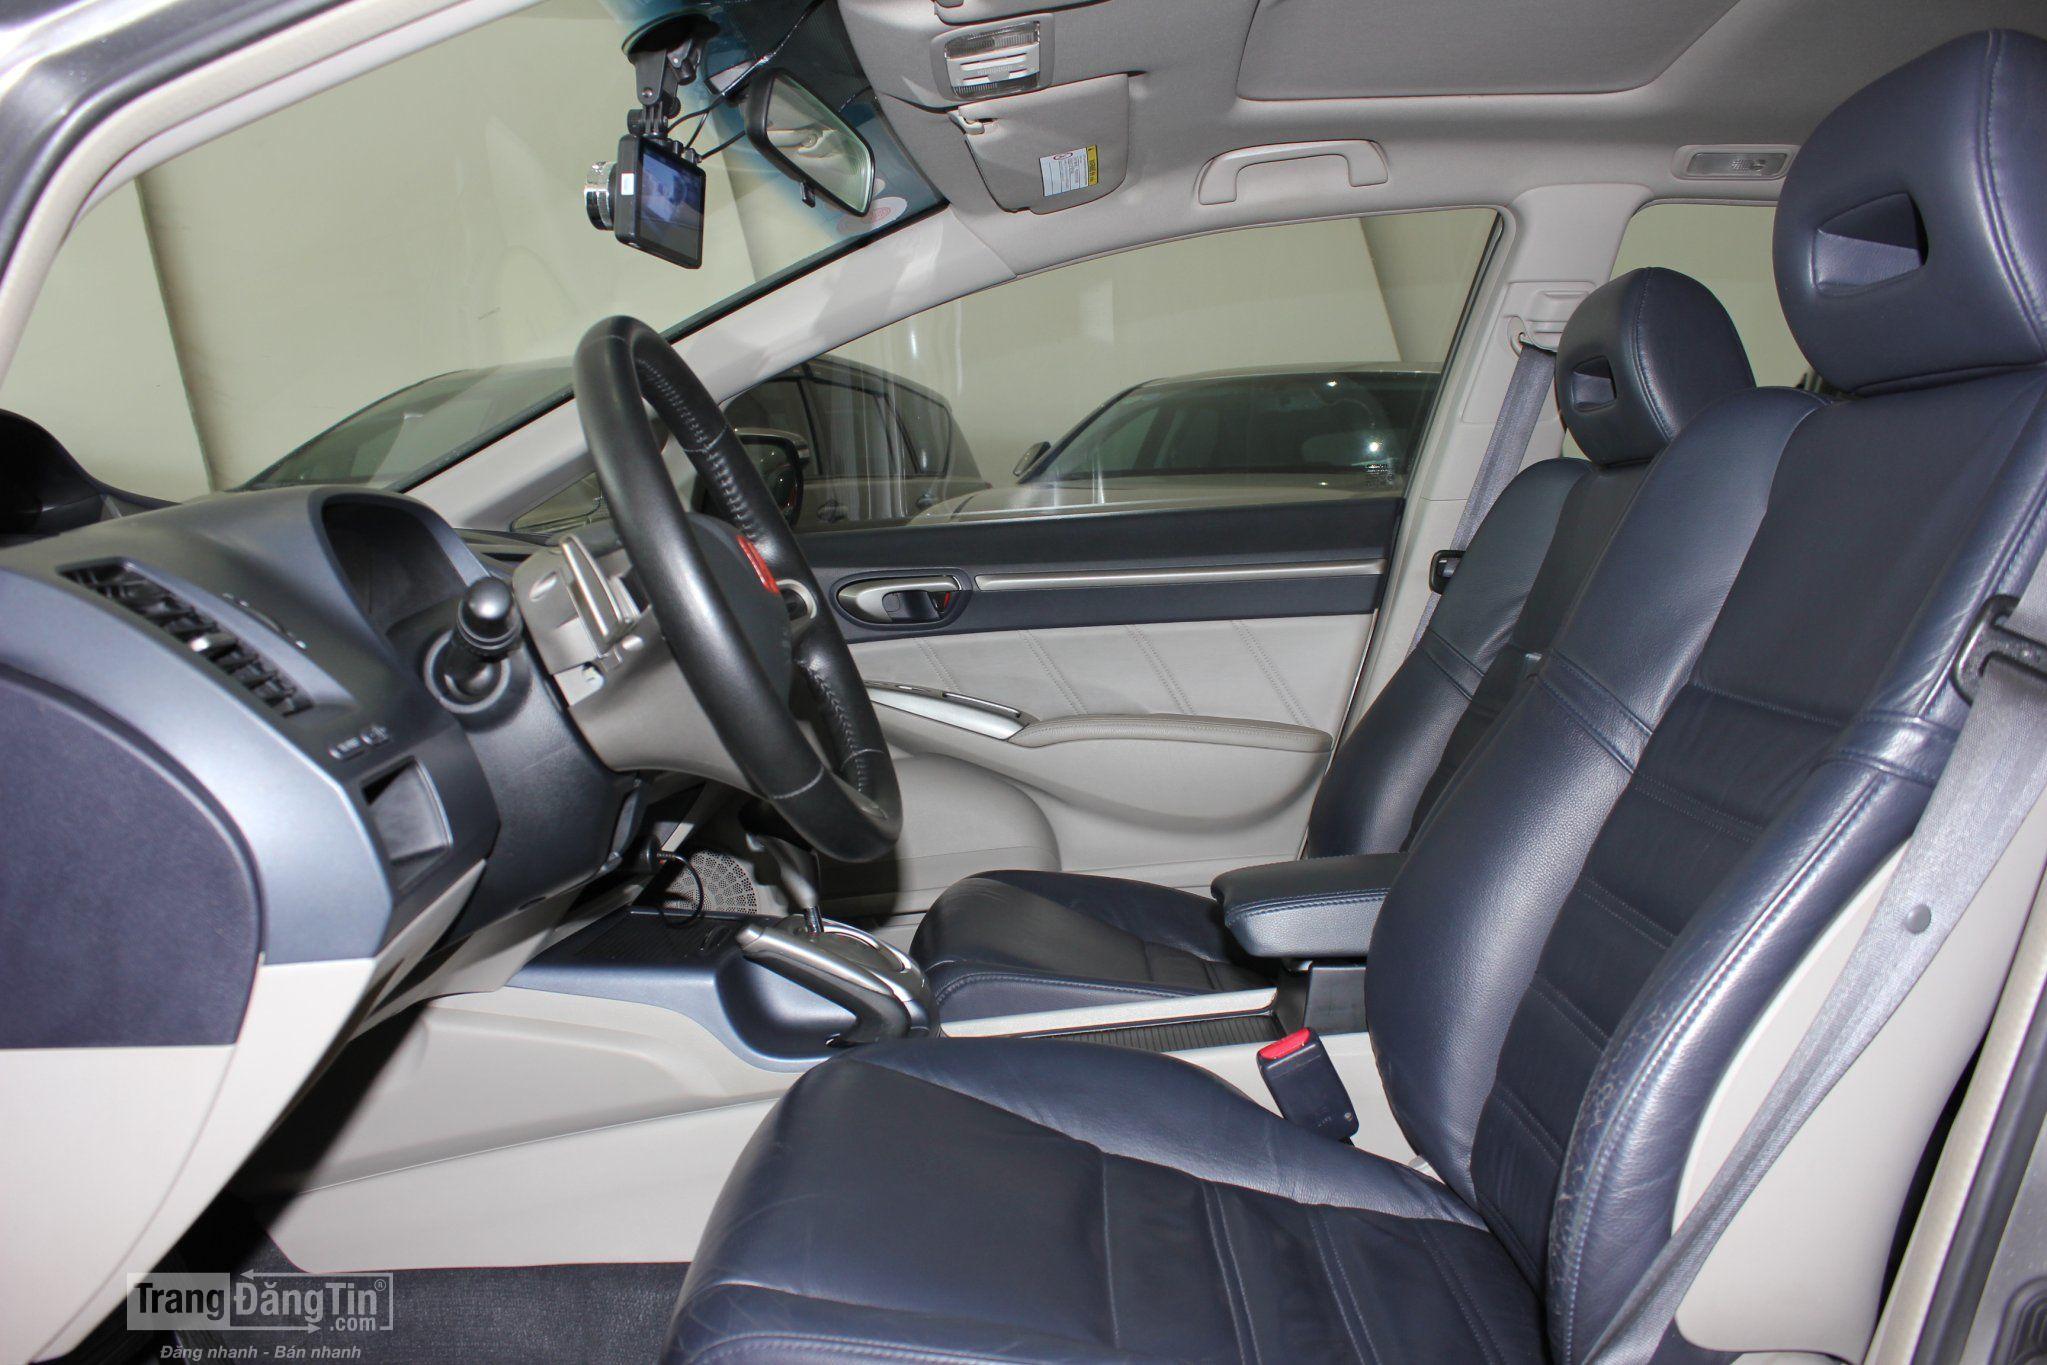  Bán Honda Civic sx 2008 số tự động giá 370 triệu